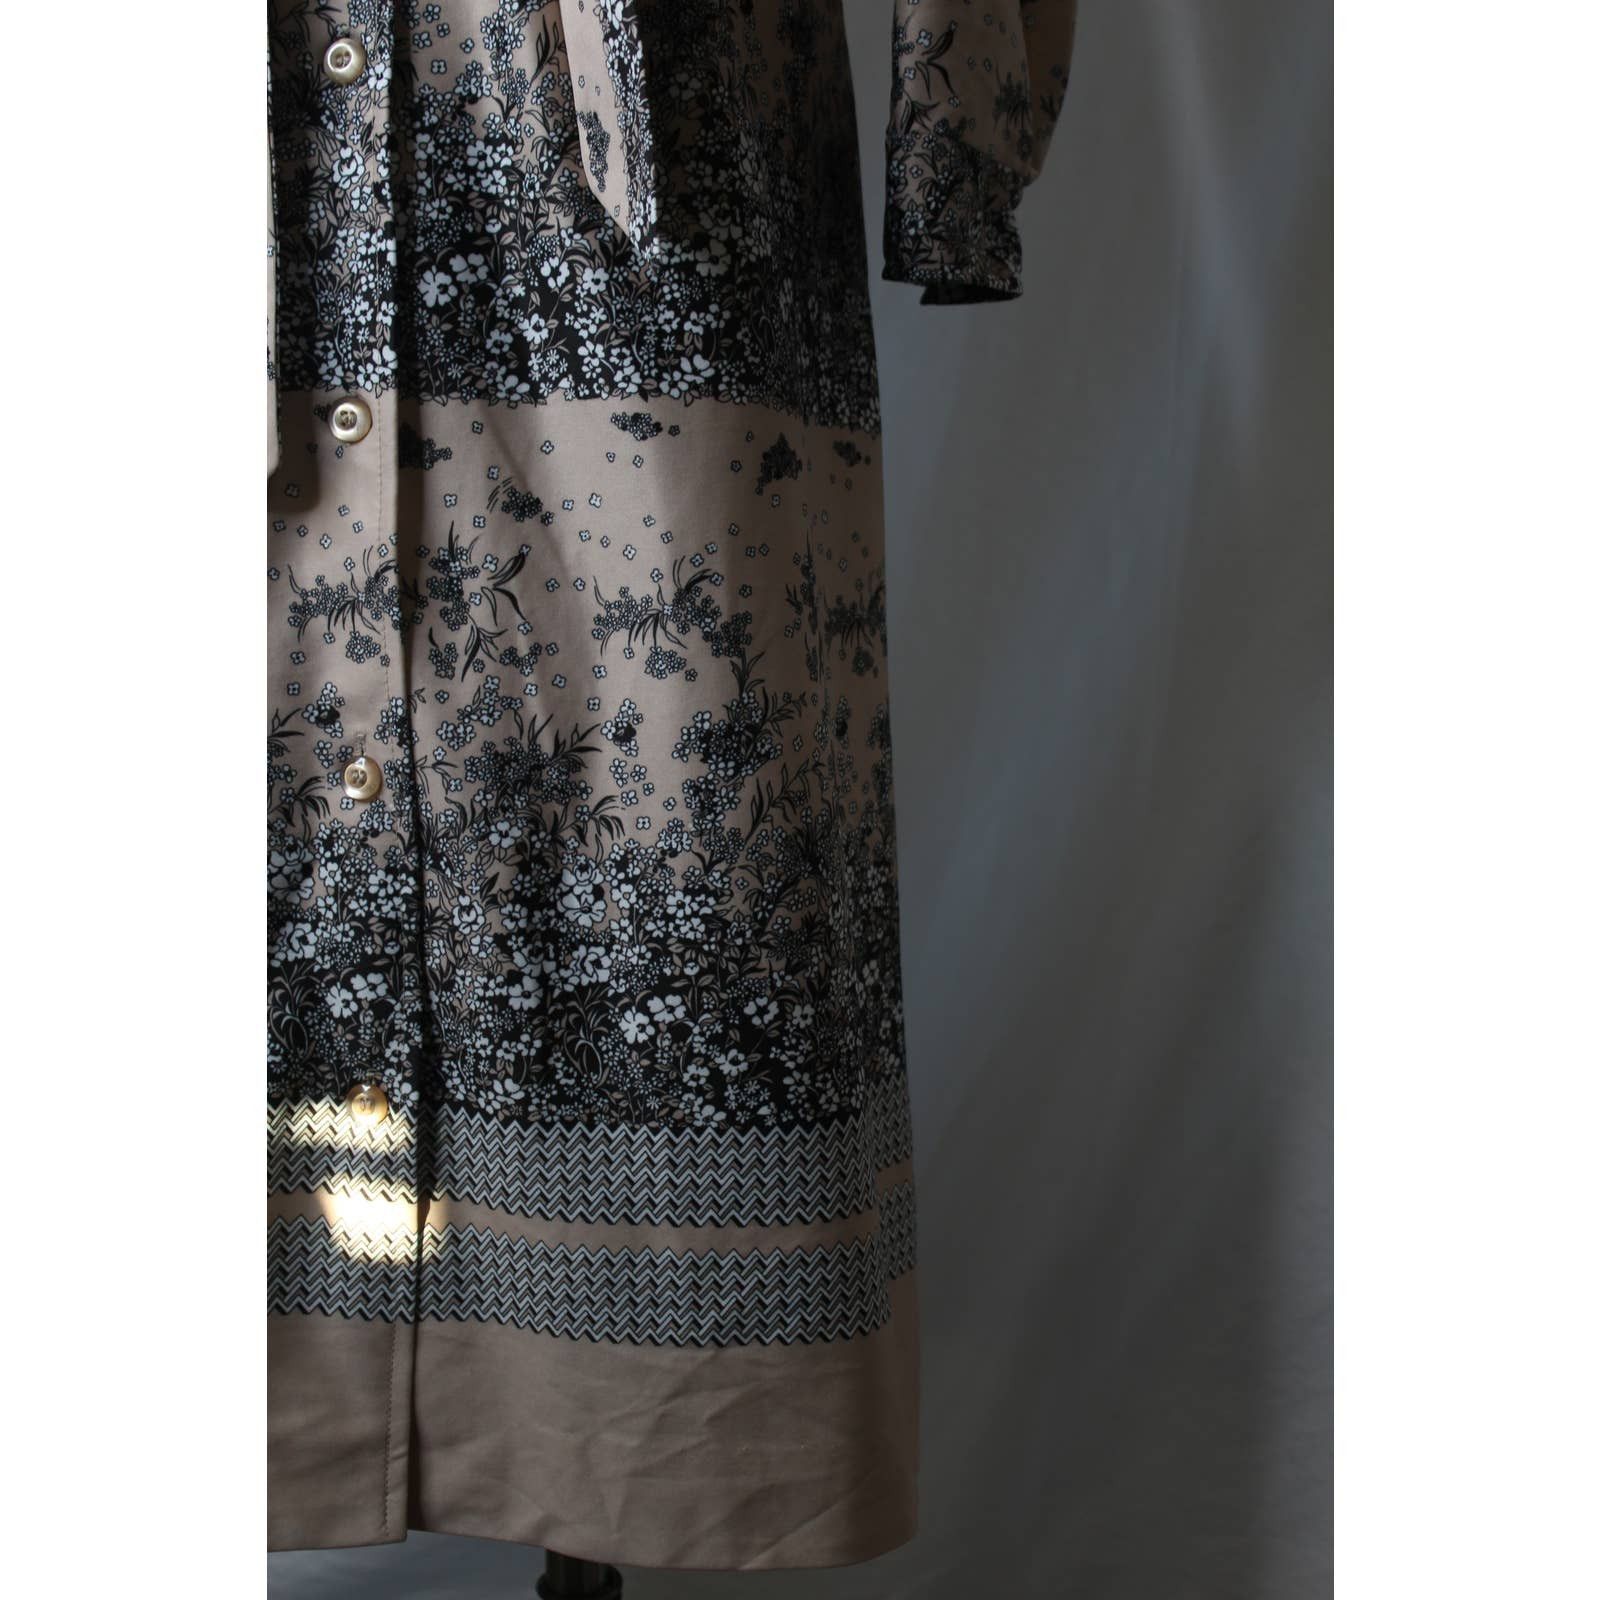 Vintage Vintage 1970s Shirt Dress Midi Neutral Floral Color Block Size M / US 6-8 / IT 42-44 - 6 Thumbnail